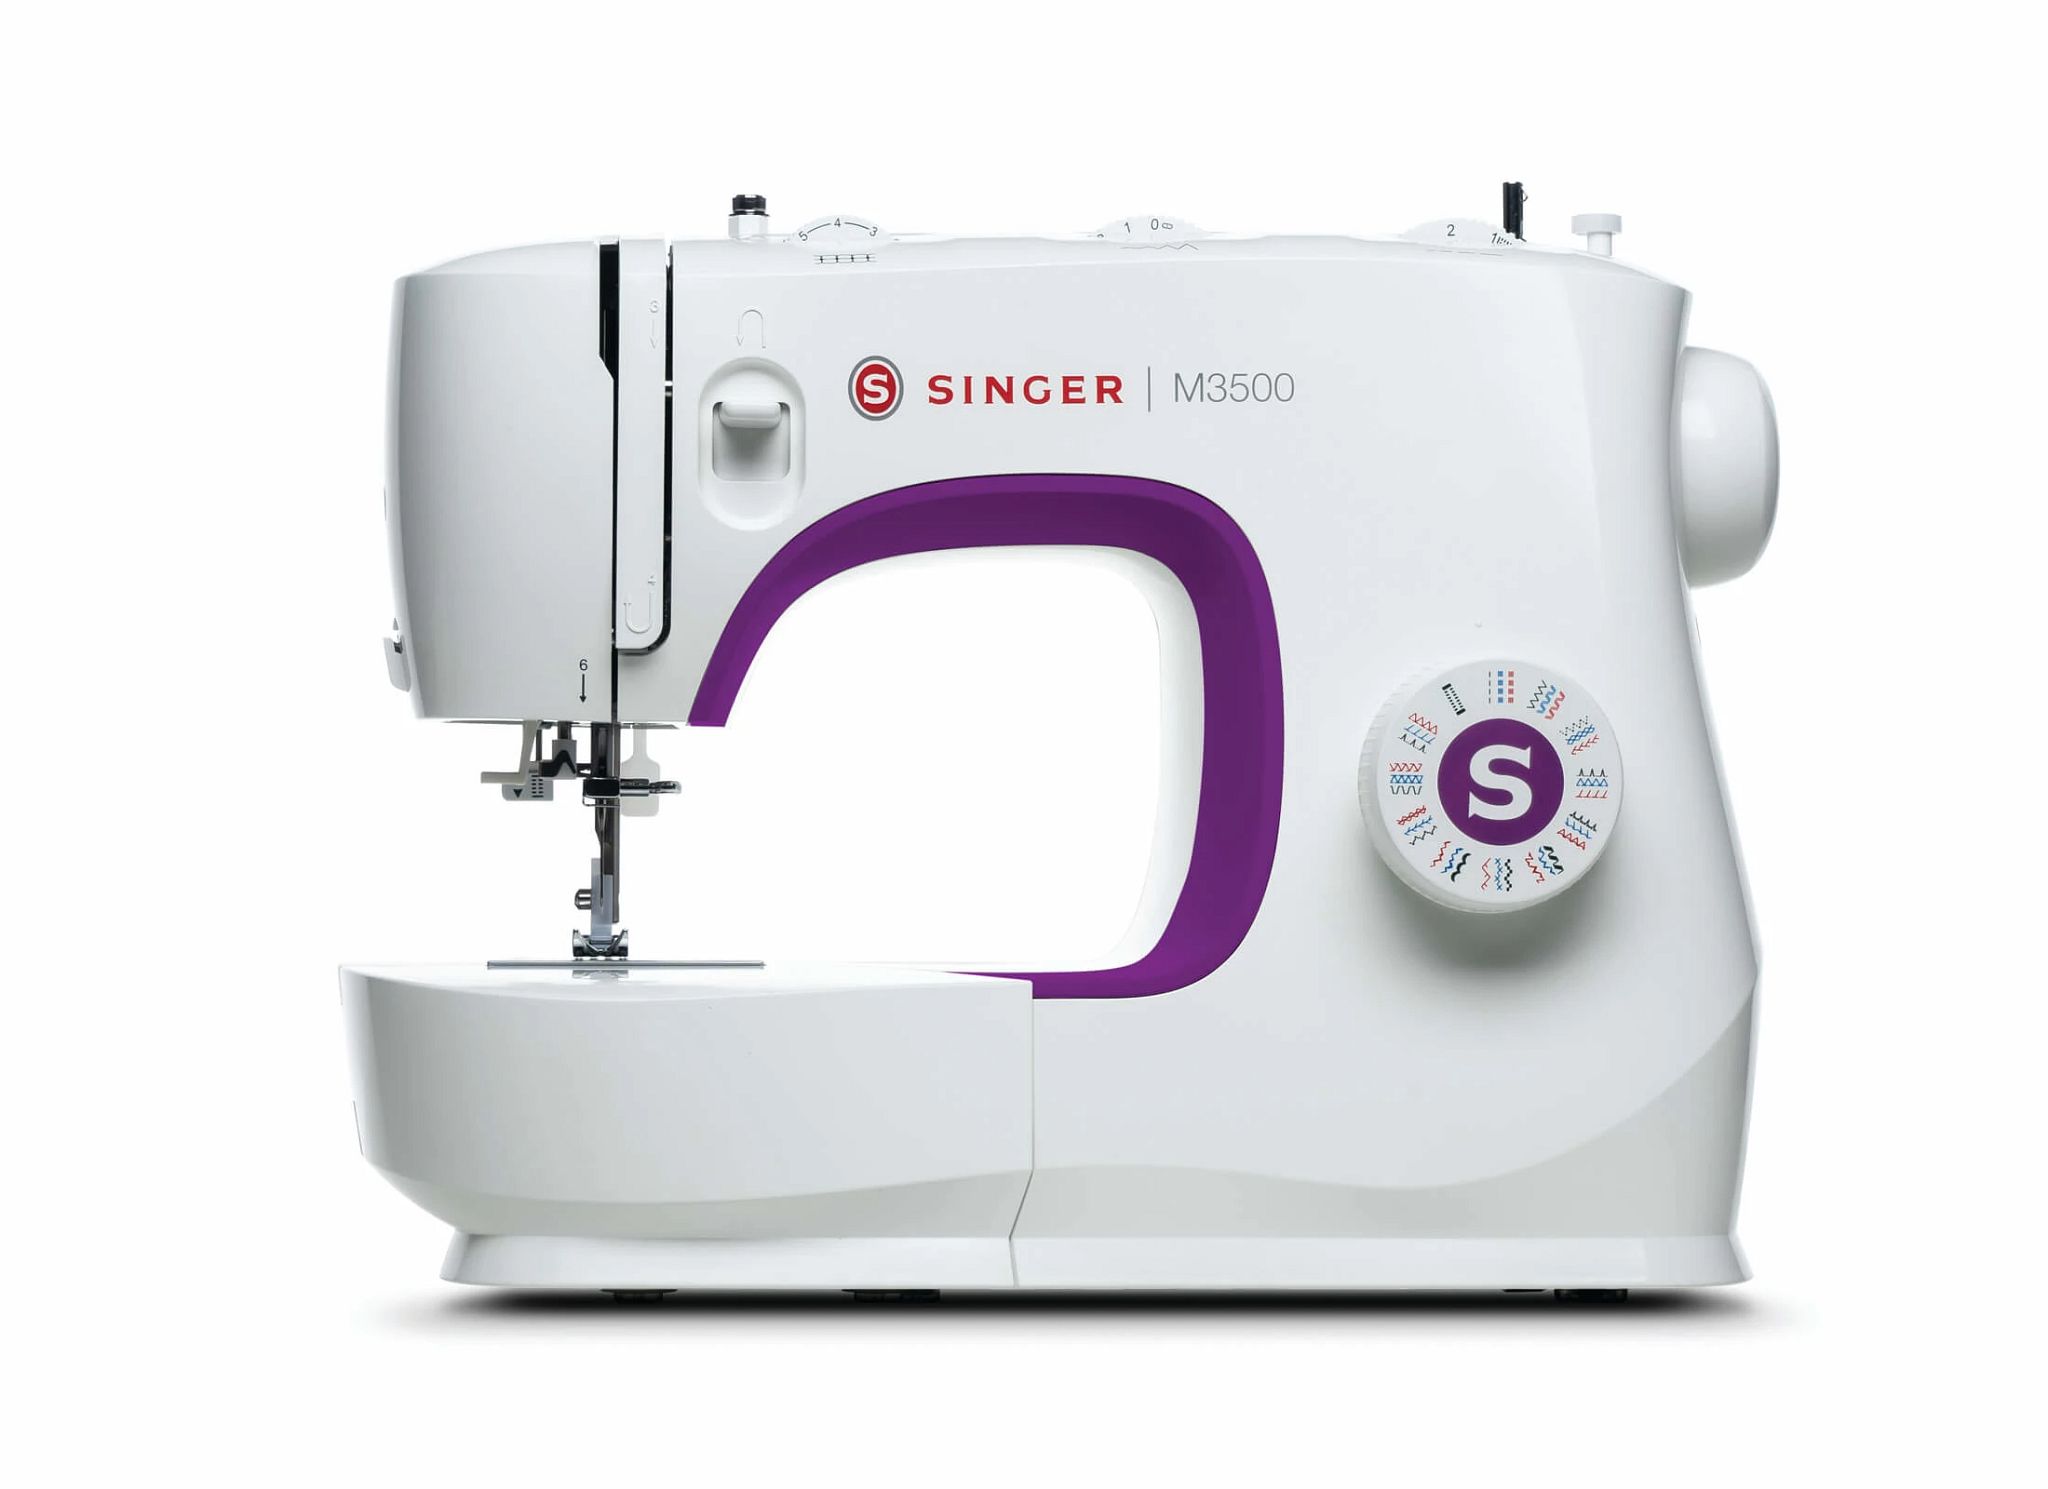 M3500 singer sewing machine